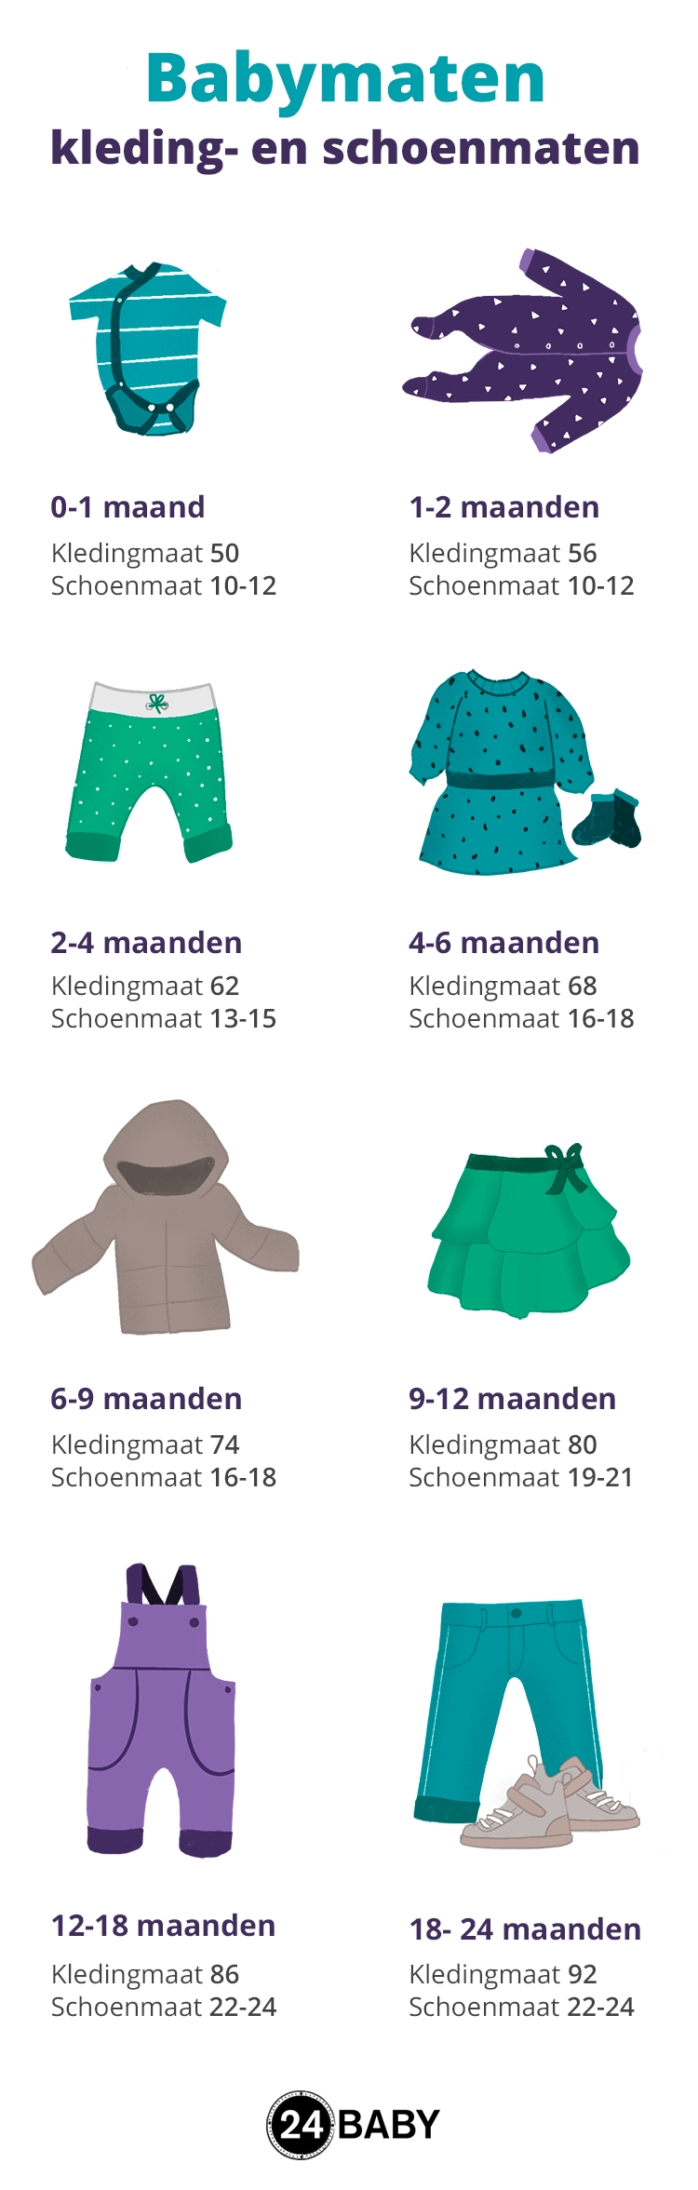 Eigendom Sympathiek interieur Babymaten – van kledingmaat tot schoenmaat – 24Baby.nl